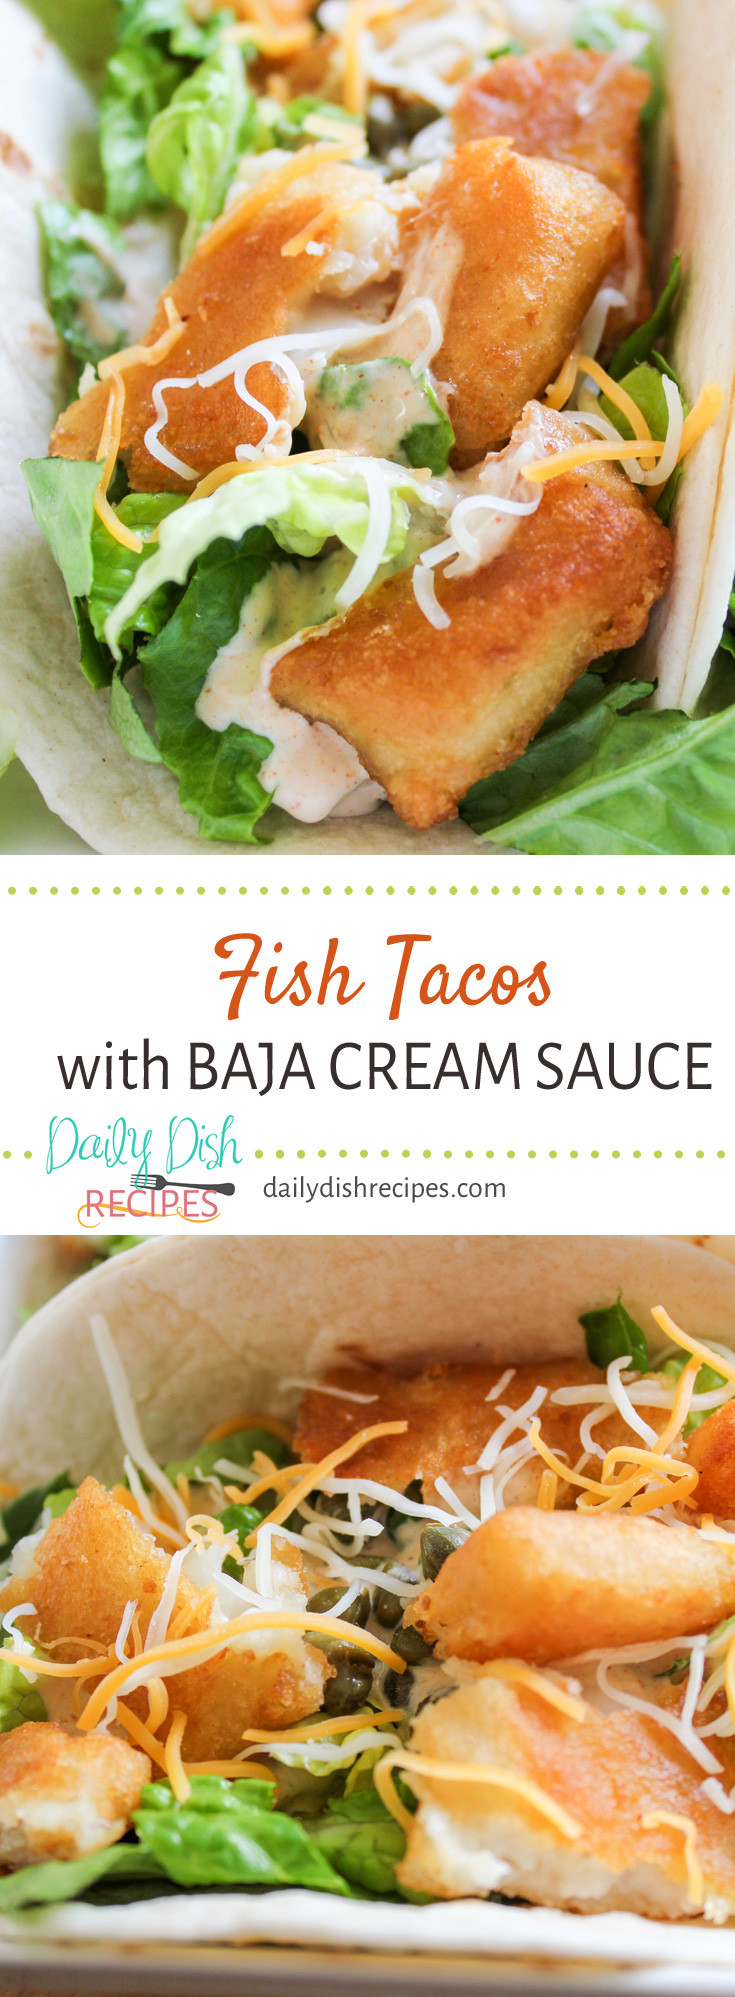 Fish Taco Sauce Recipes
 Fish Tacos with Baja Cream Sauce